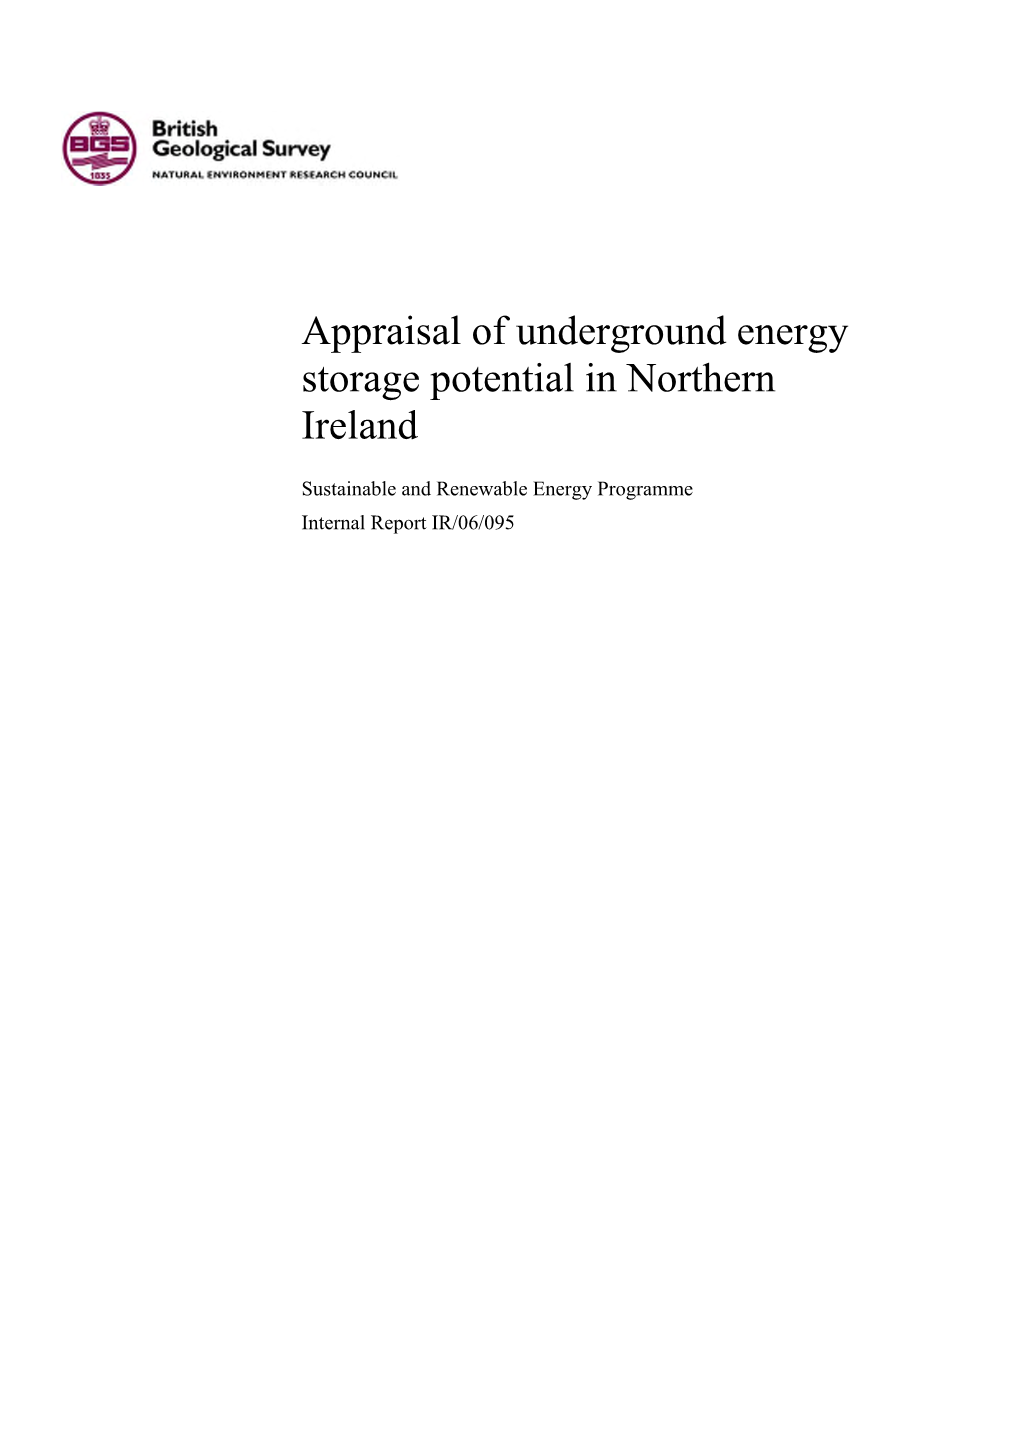 Appraisal of Underground Energy Storage Potential in Northern Ireland